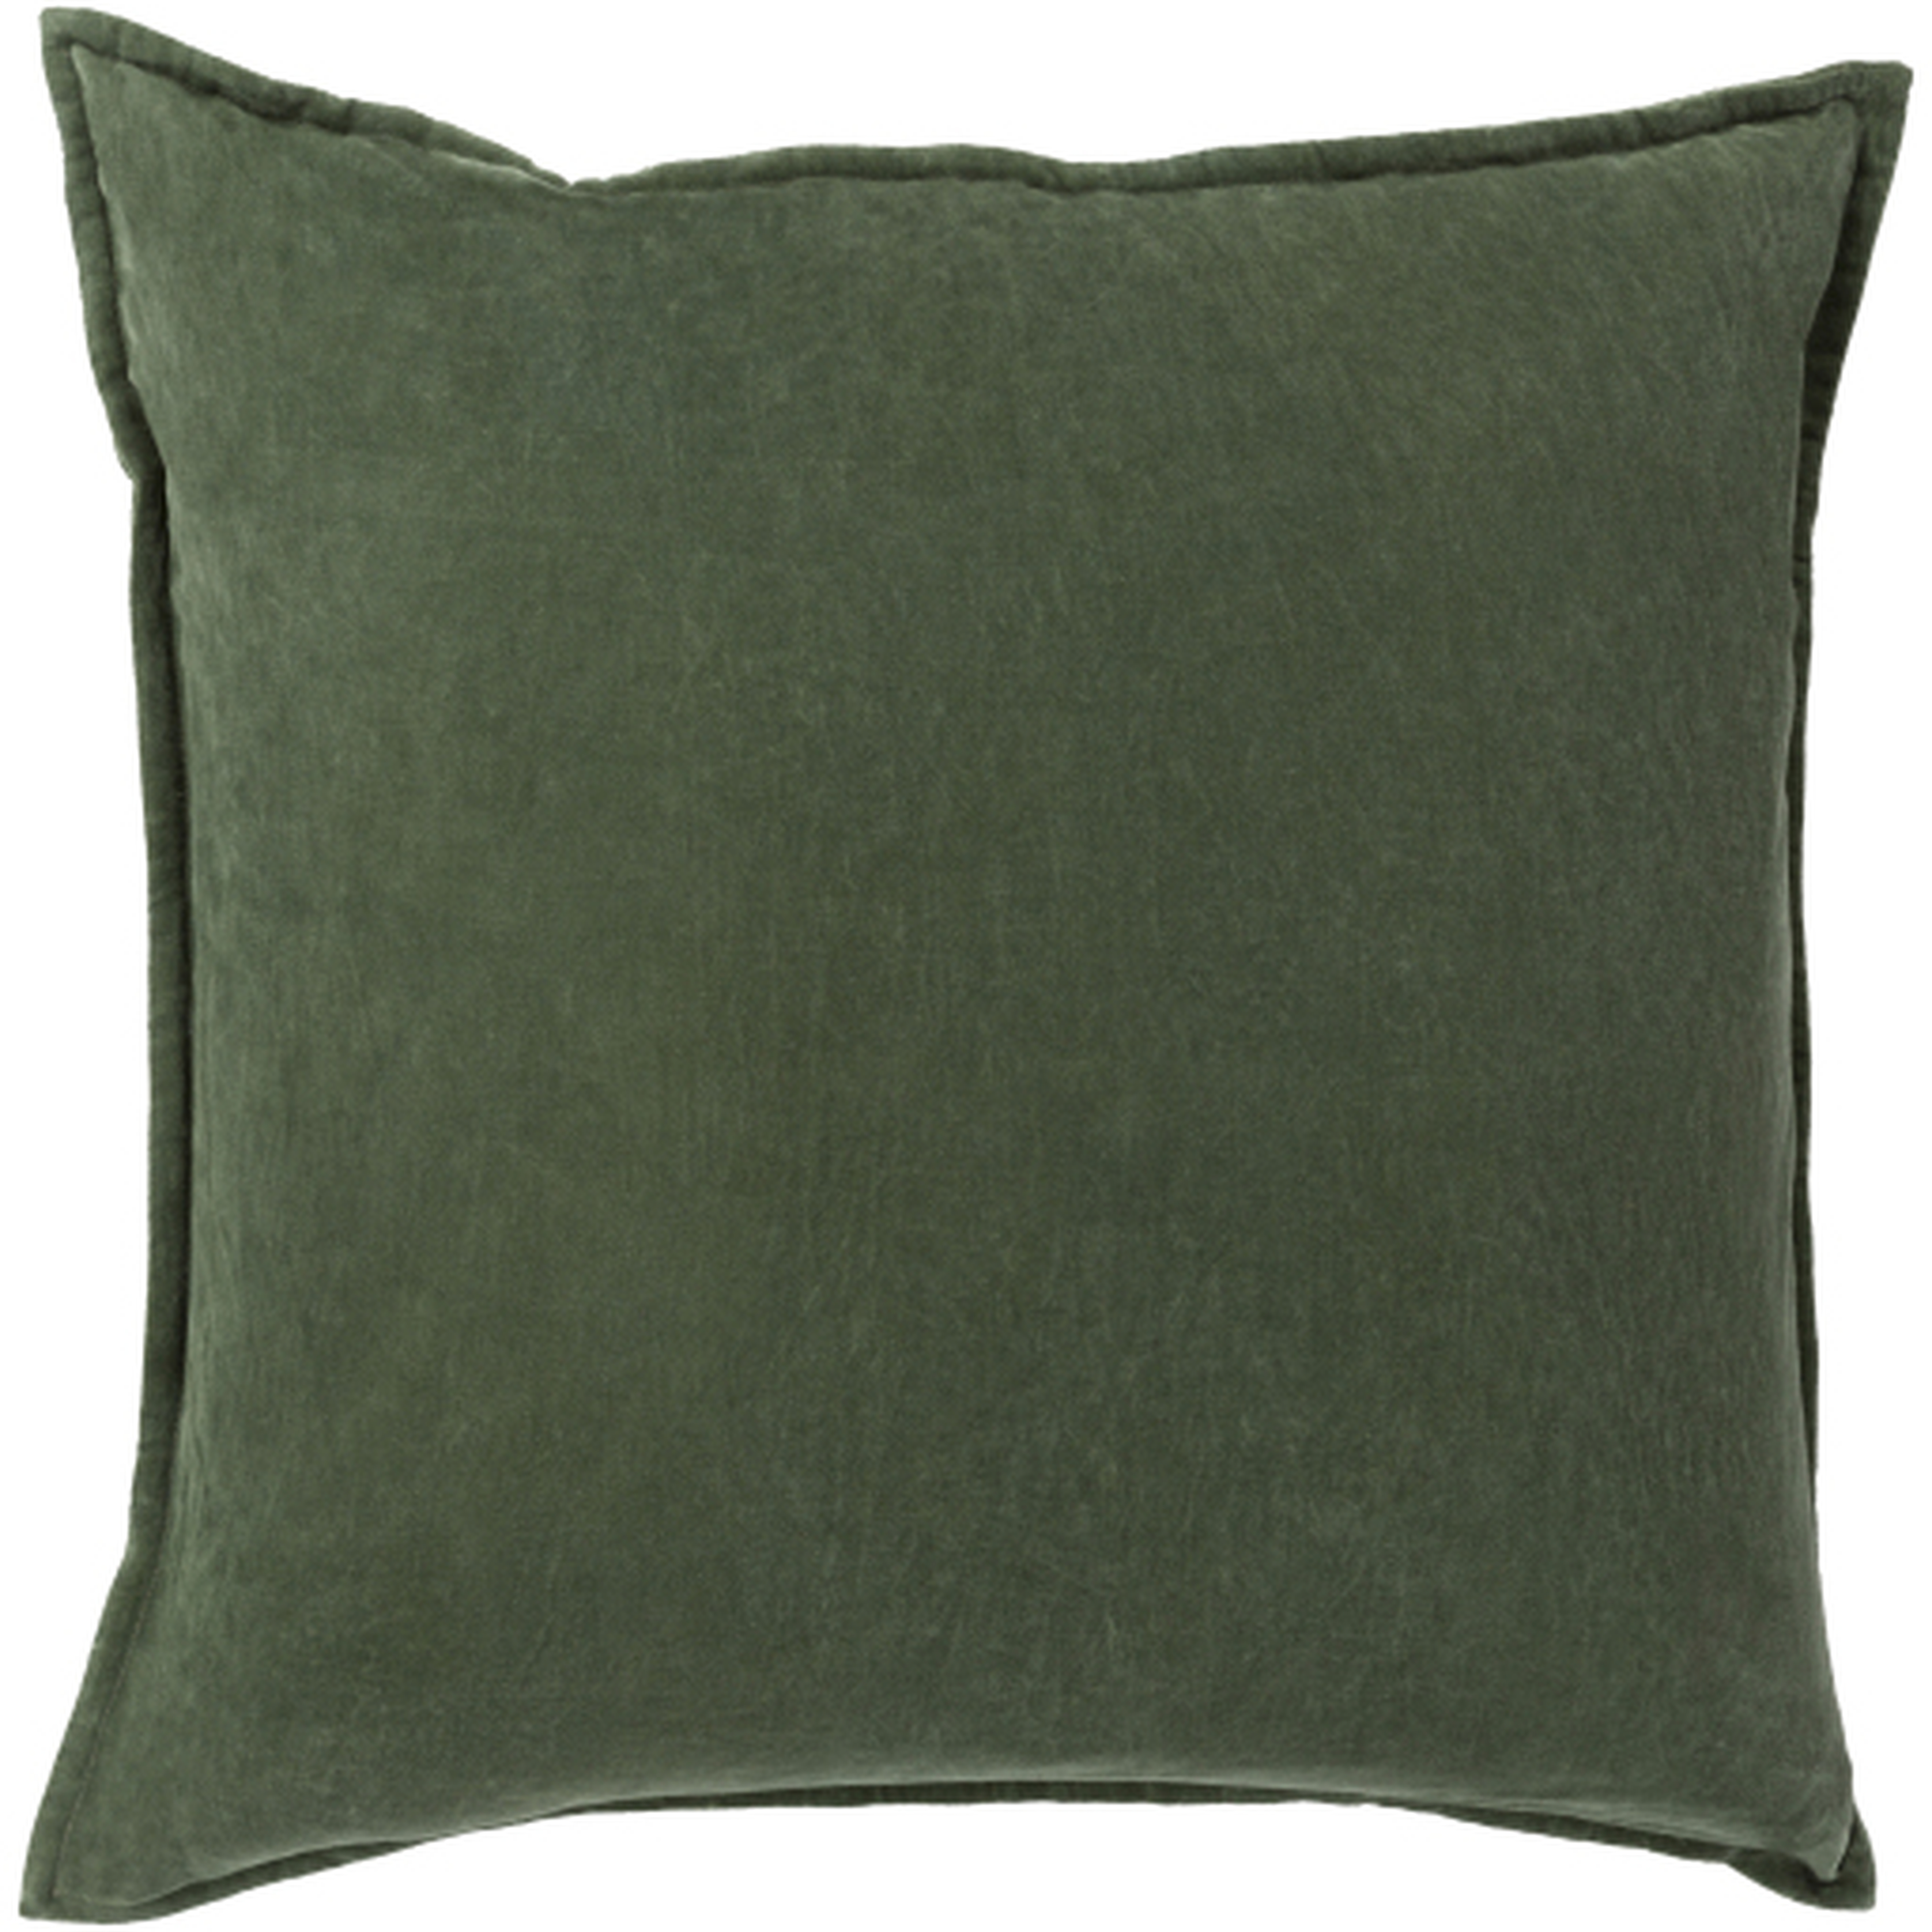 Cotton Velvet Throw Pillow, Dark Green, 18" x 18" - Neva Home